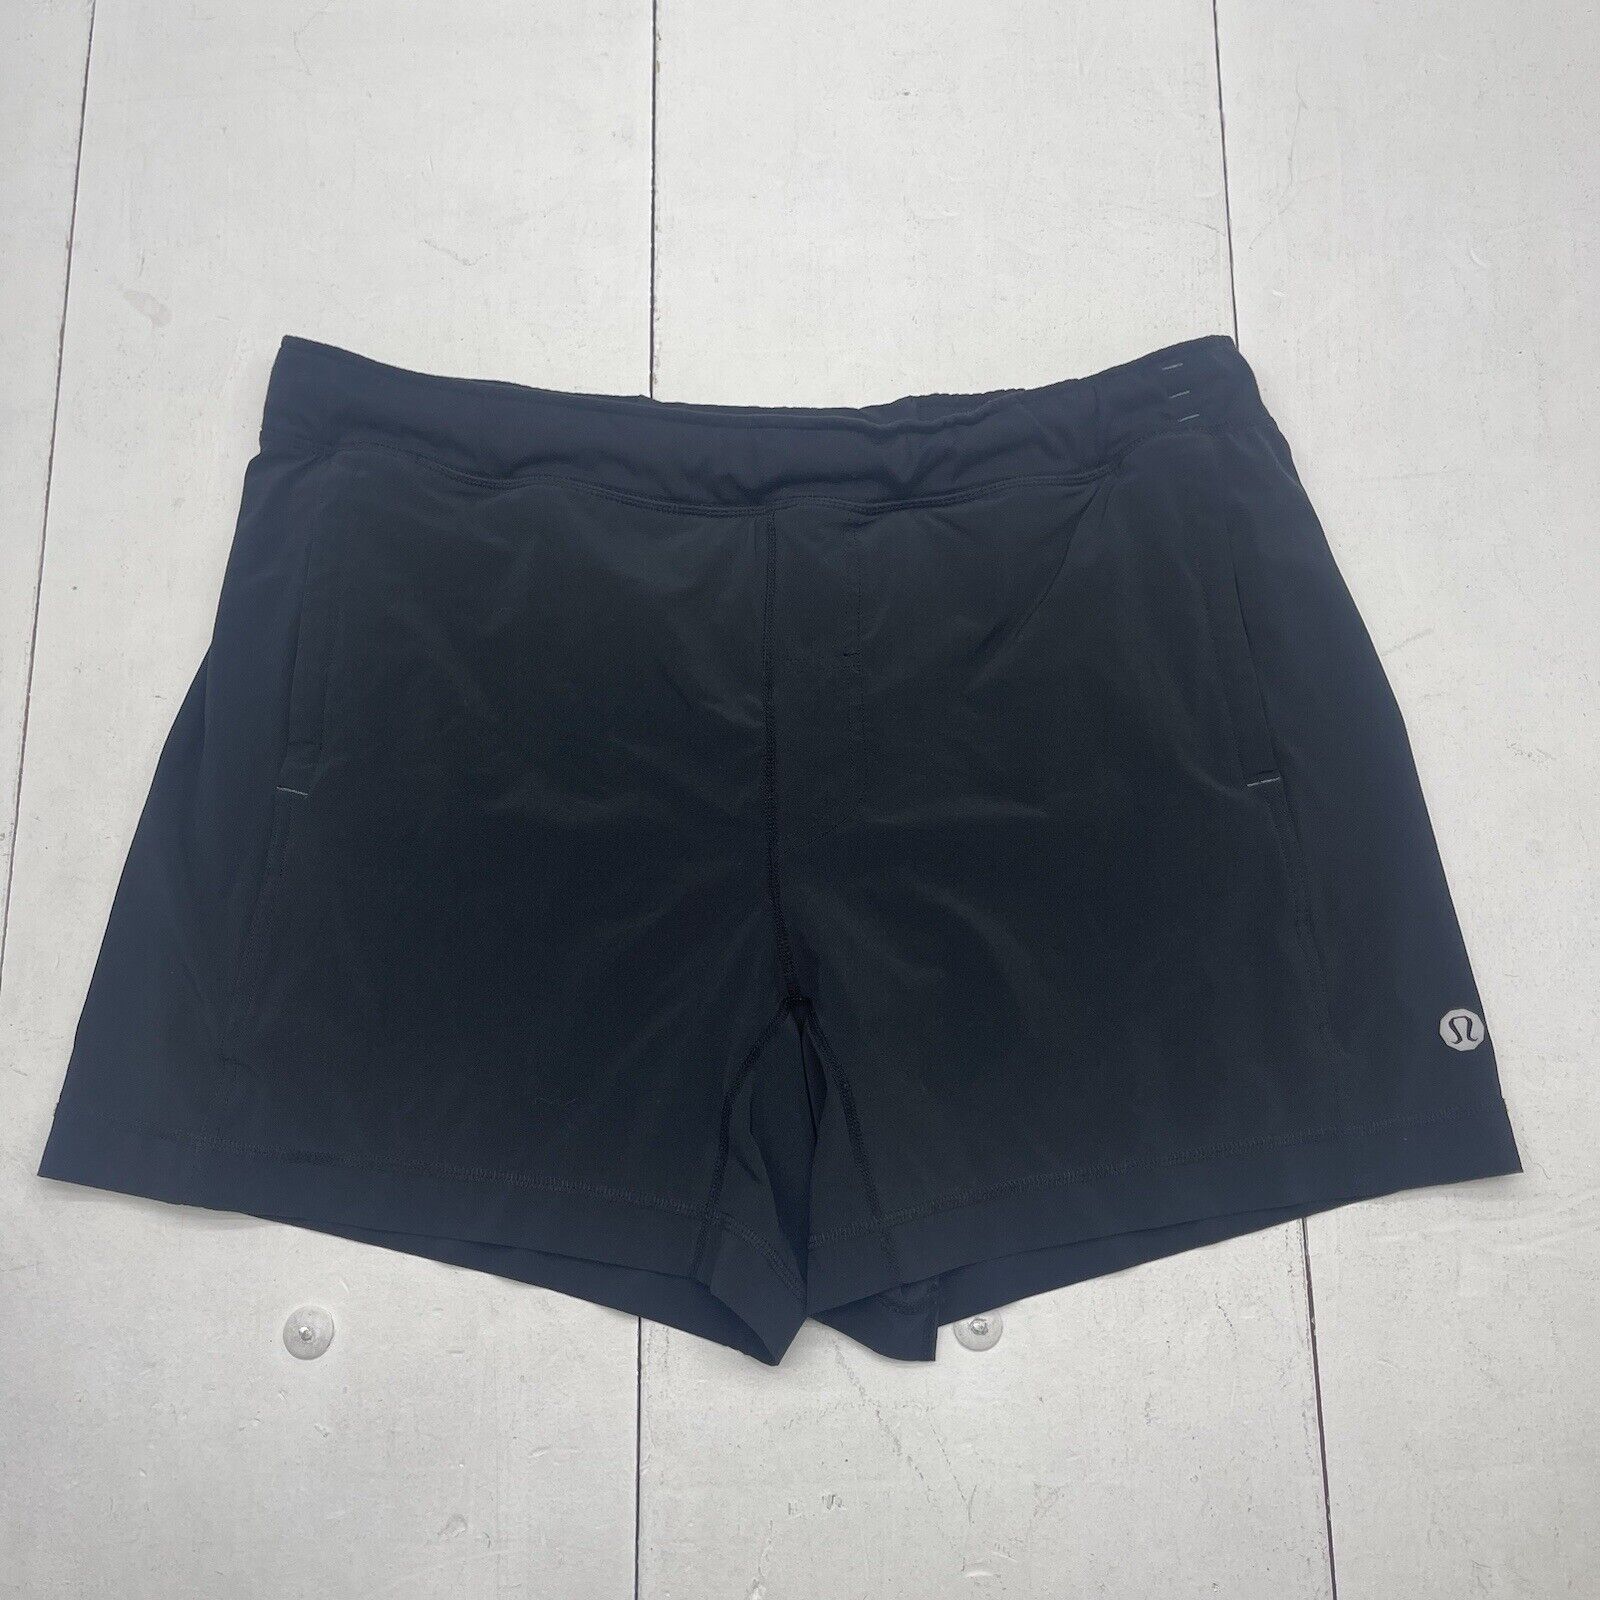 Lululemon Black Athletic Lined Shorts Mens Size XL